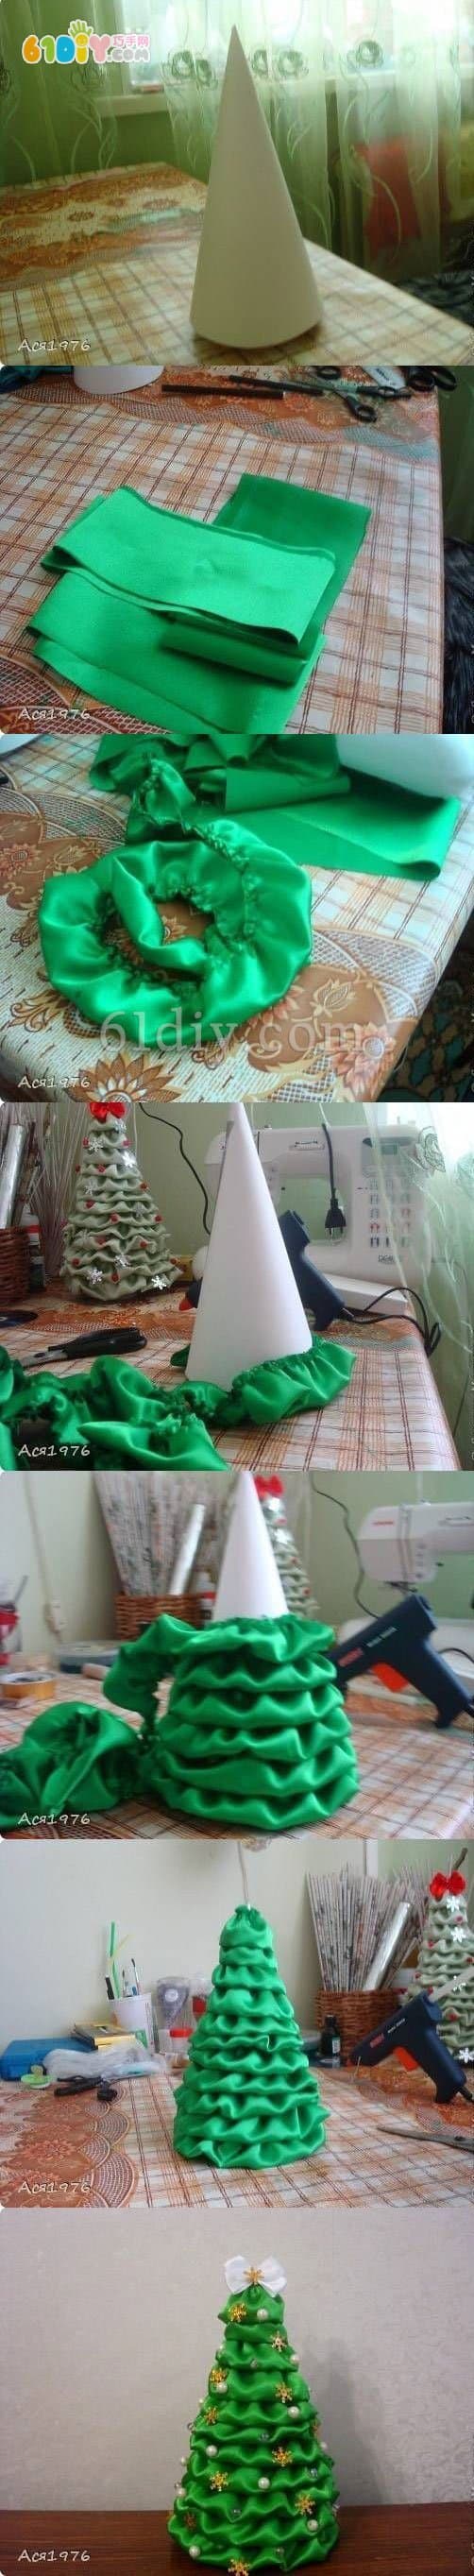 布艺圣诞树DIY制作